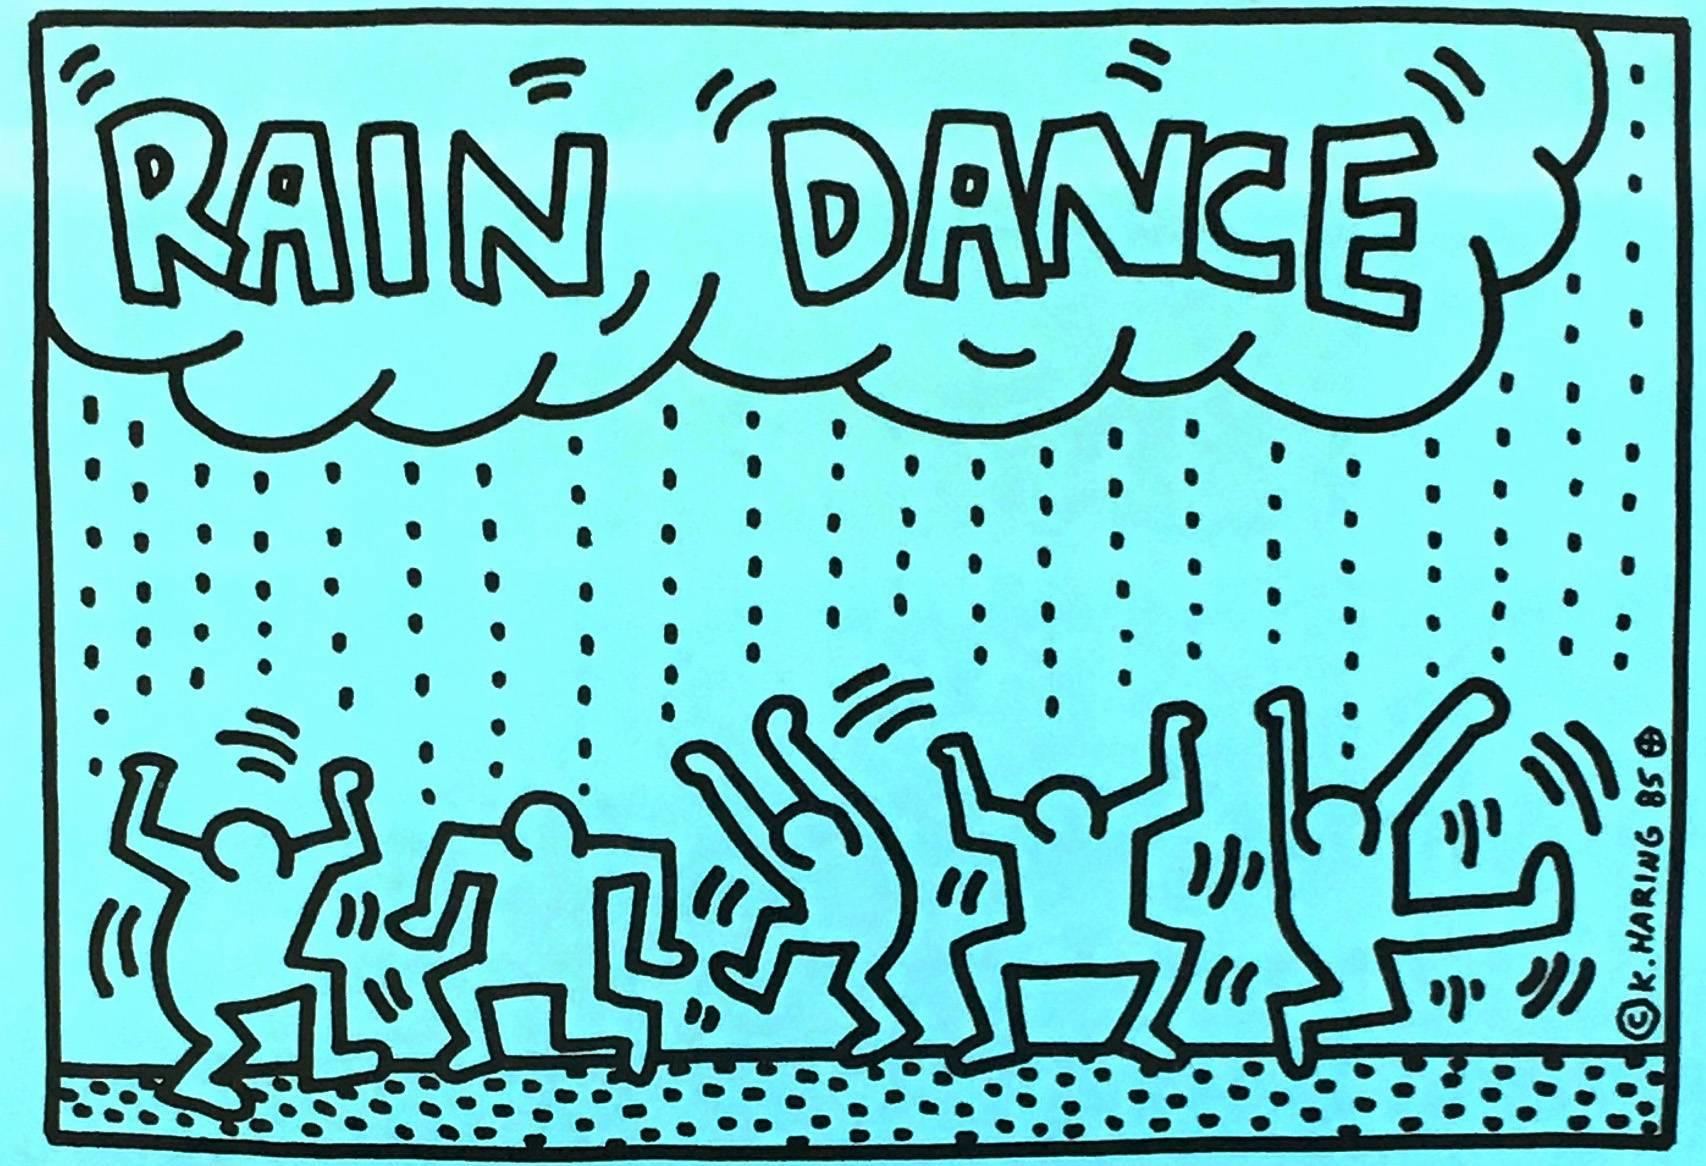 La danse de la pluie de Keith Haring : 
Announcement d'affiche d'origine illustré de Keith Haring pour une fête aux bénéfices de l'UNICEF au légendaire Paradise garage de Larry Levans en 1985. Un événement organisé et organisé par Keith Haring pour